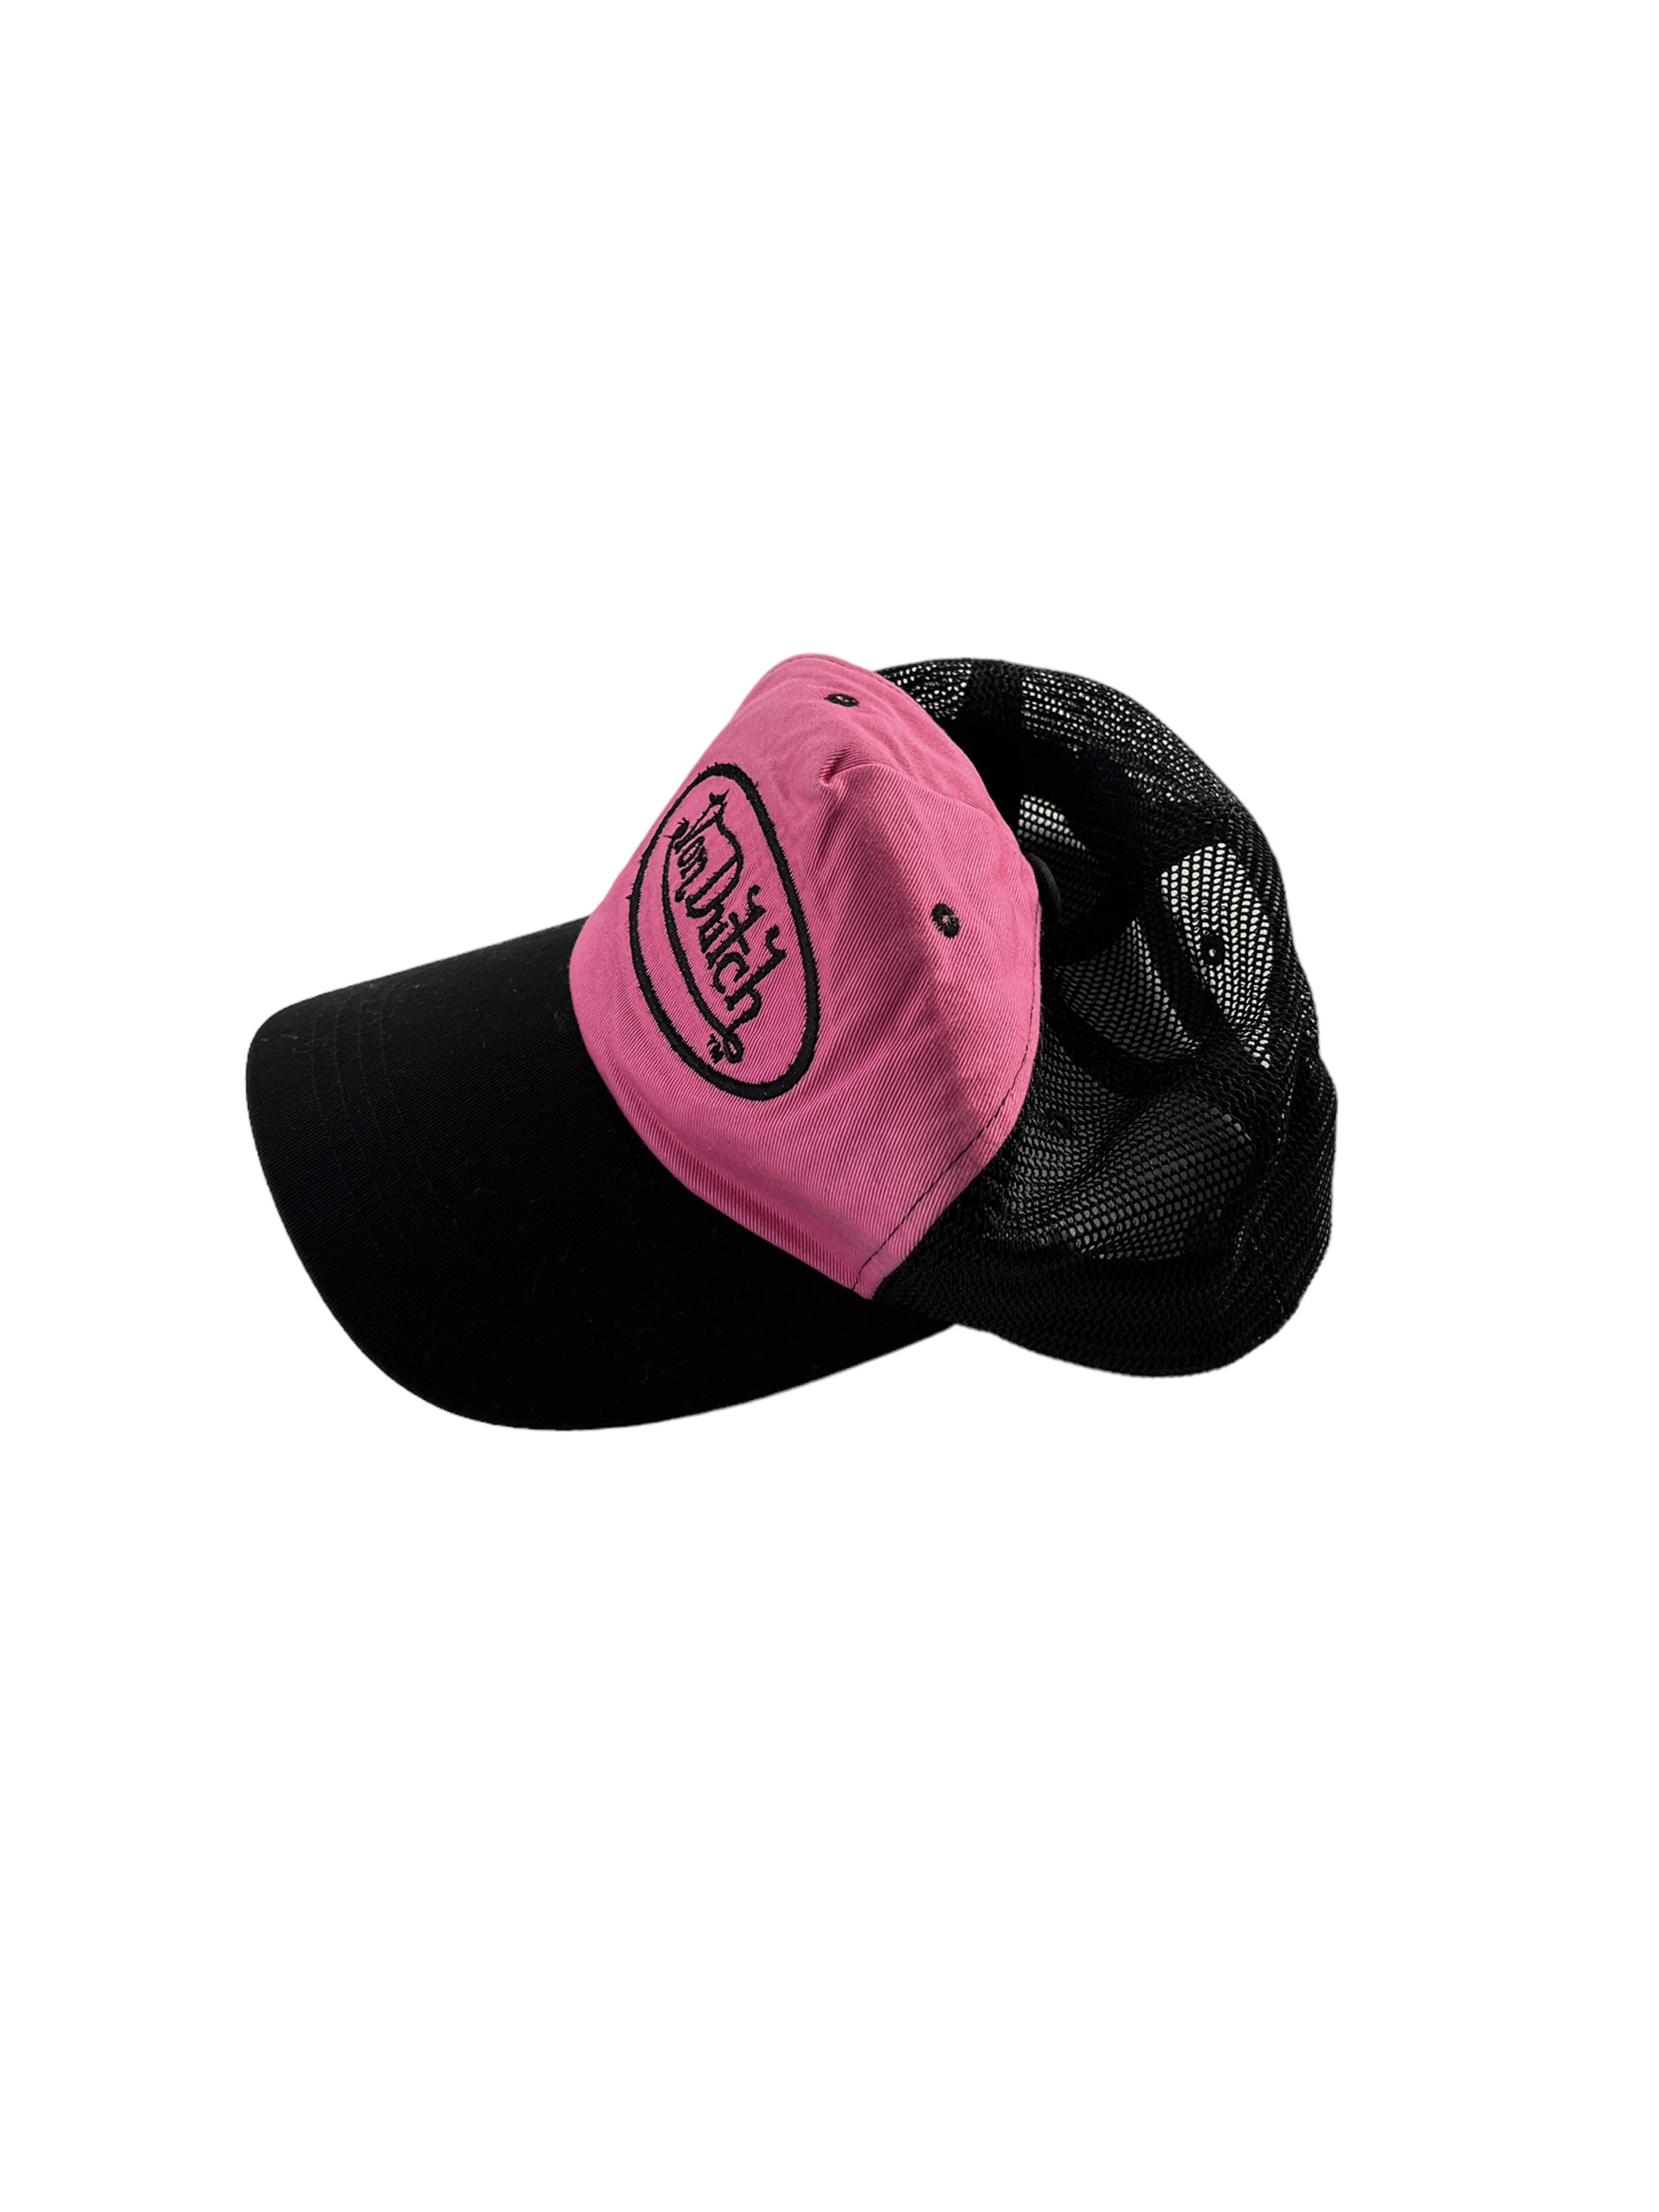 Von Dutch pink cap